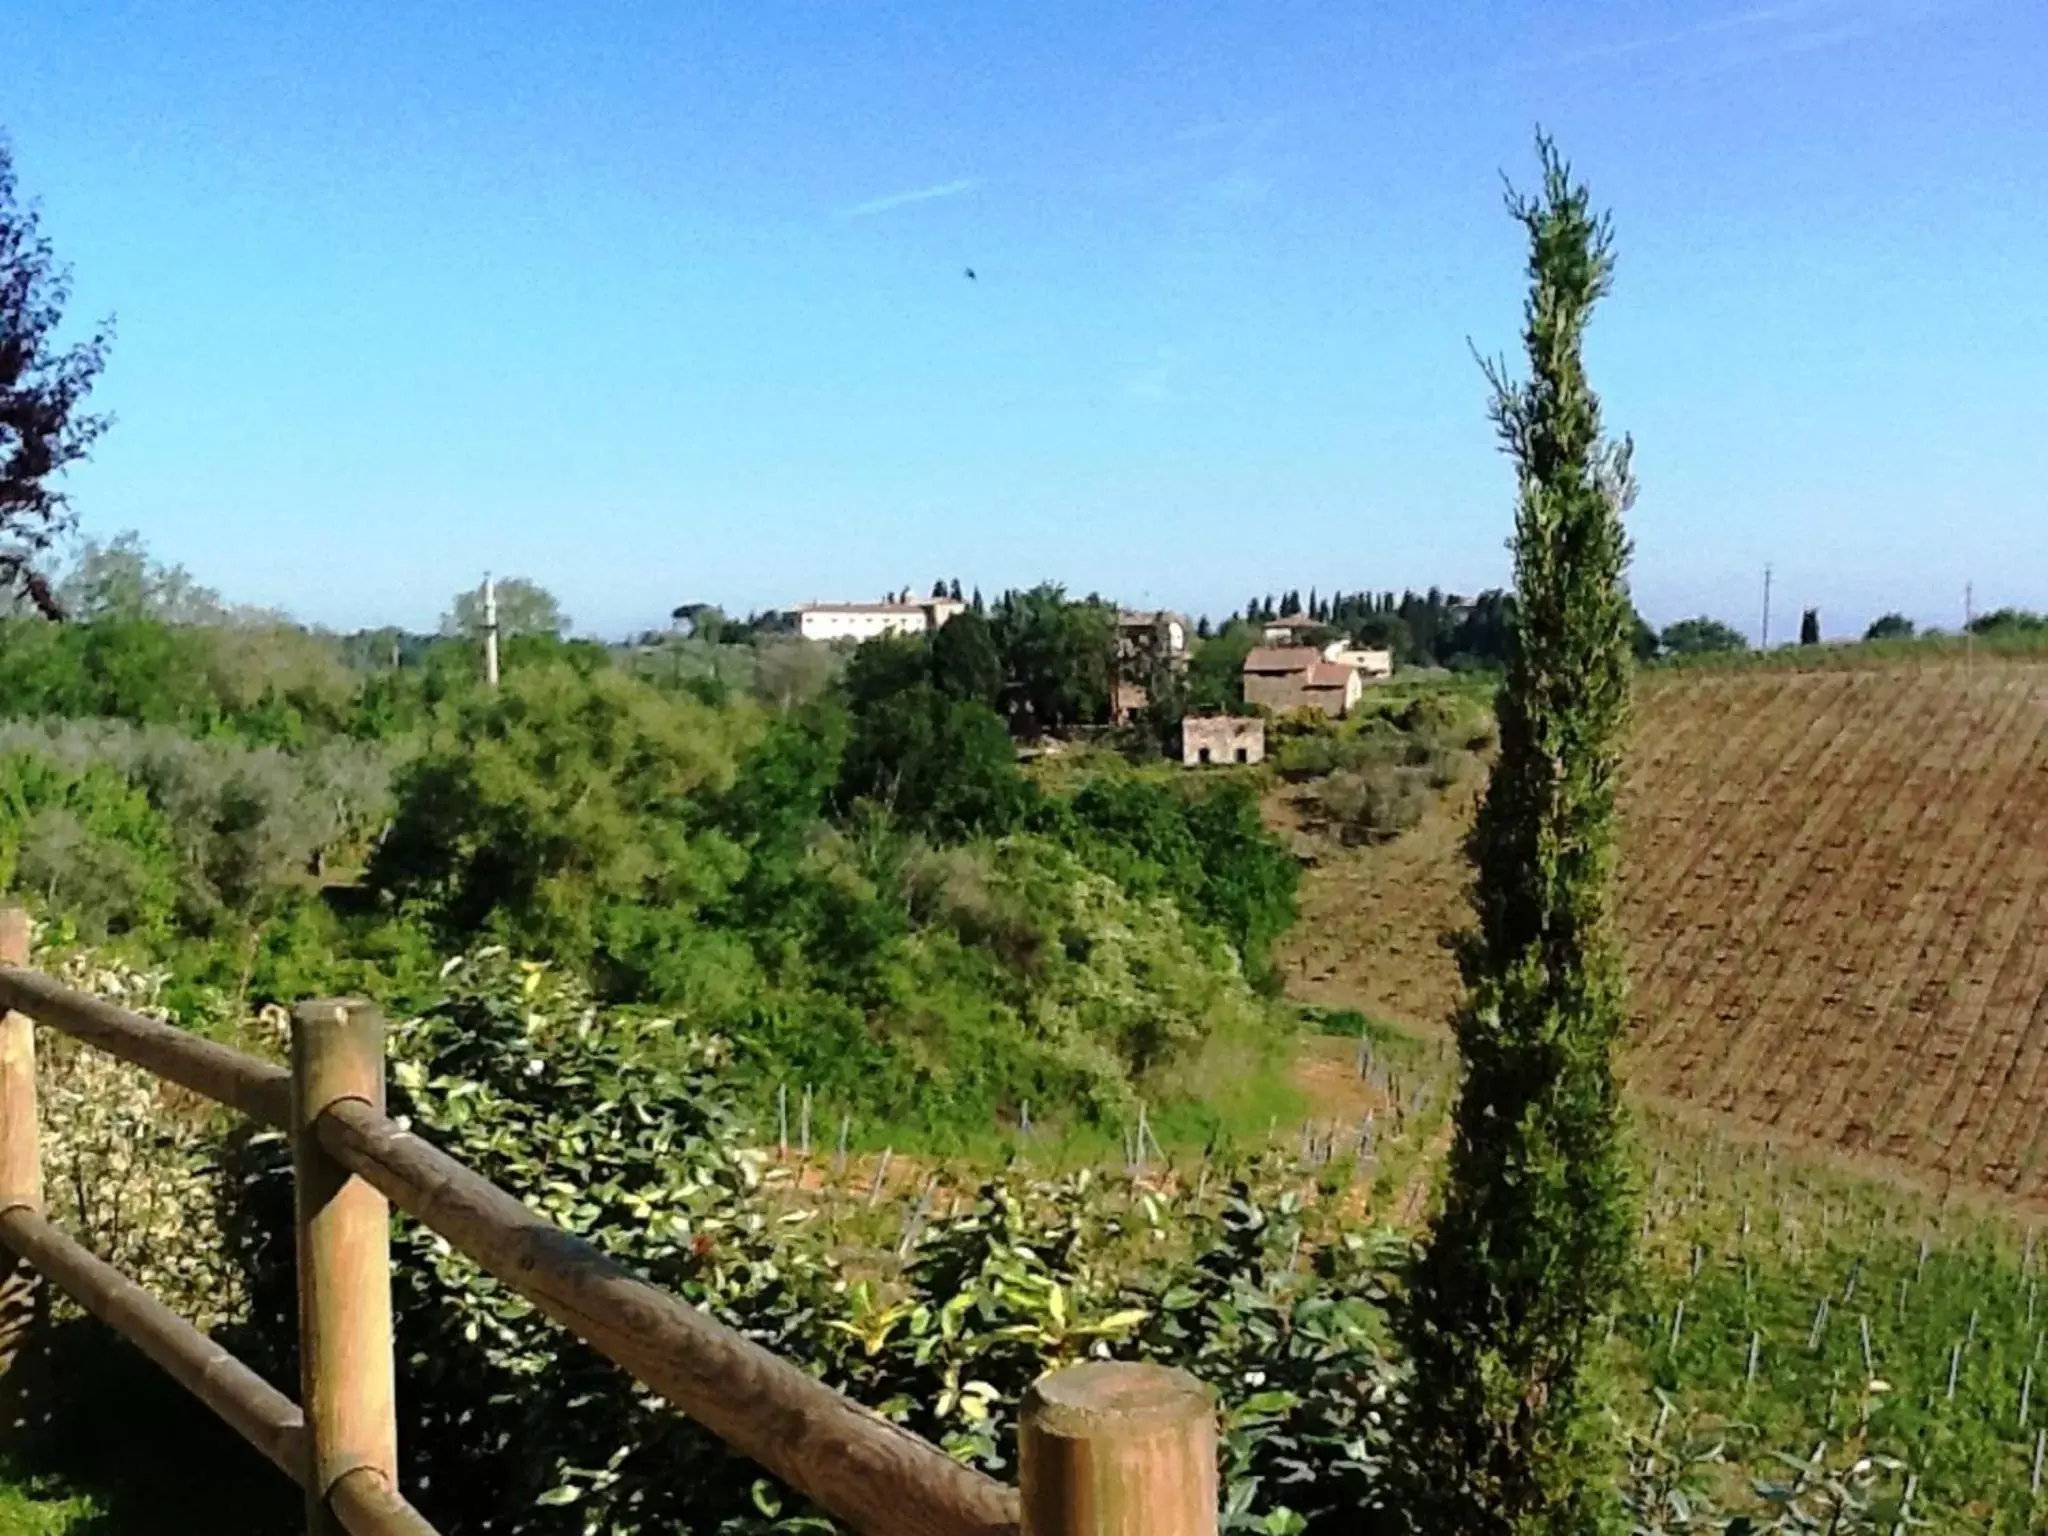 Day in Chianti Village Morrocco